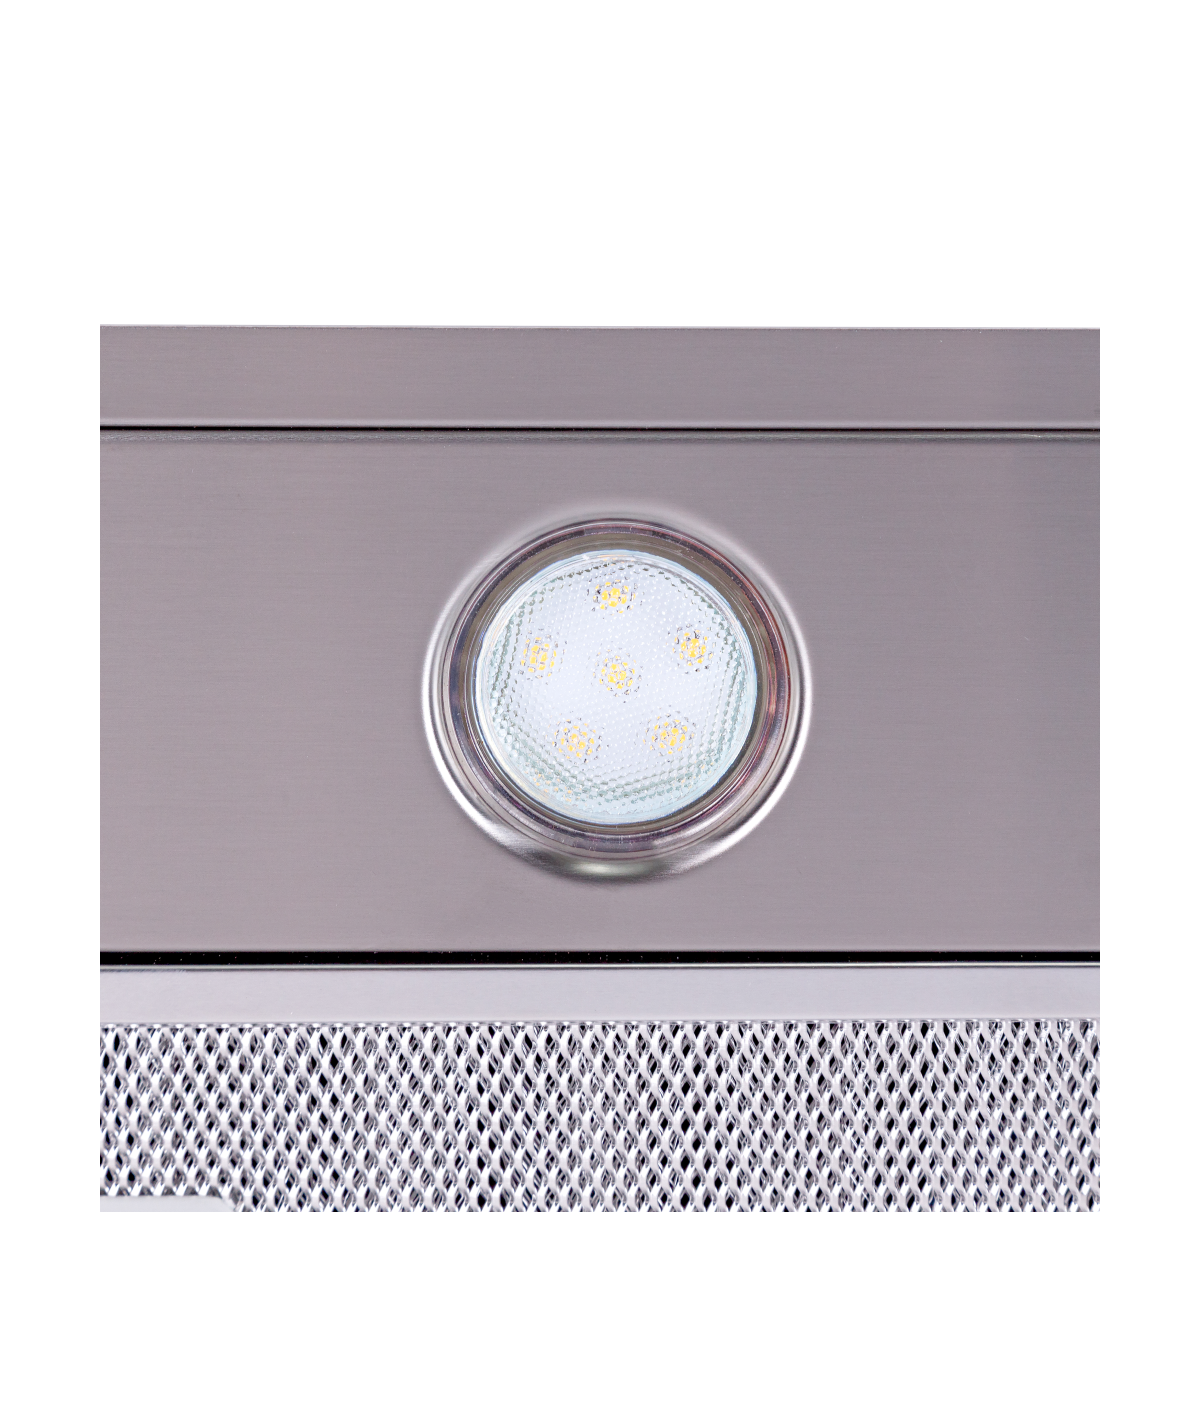 Кухонная вытяжка Perfelli BI 6512 A 1000 I LED отзывы - изображения 5